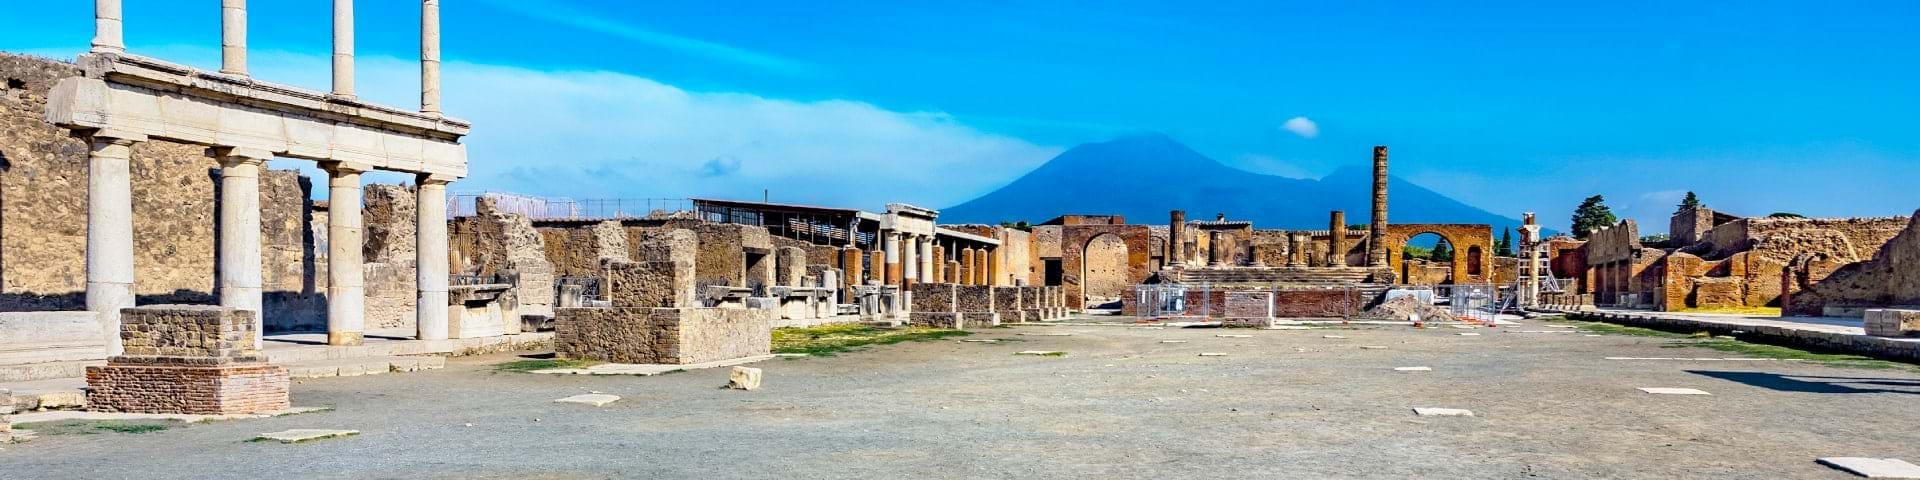 Pompeii & Amalfi Day Trips from Rome